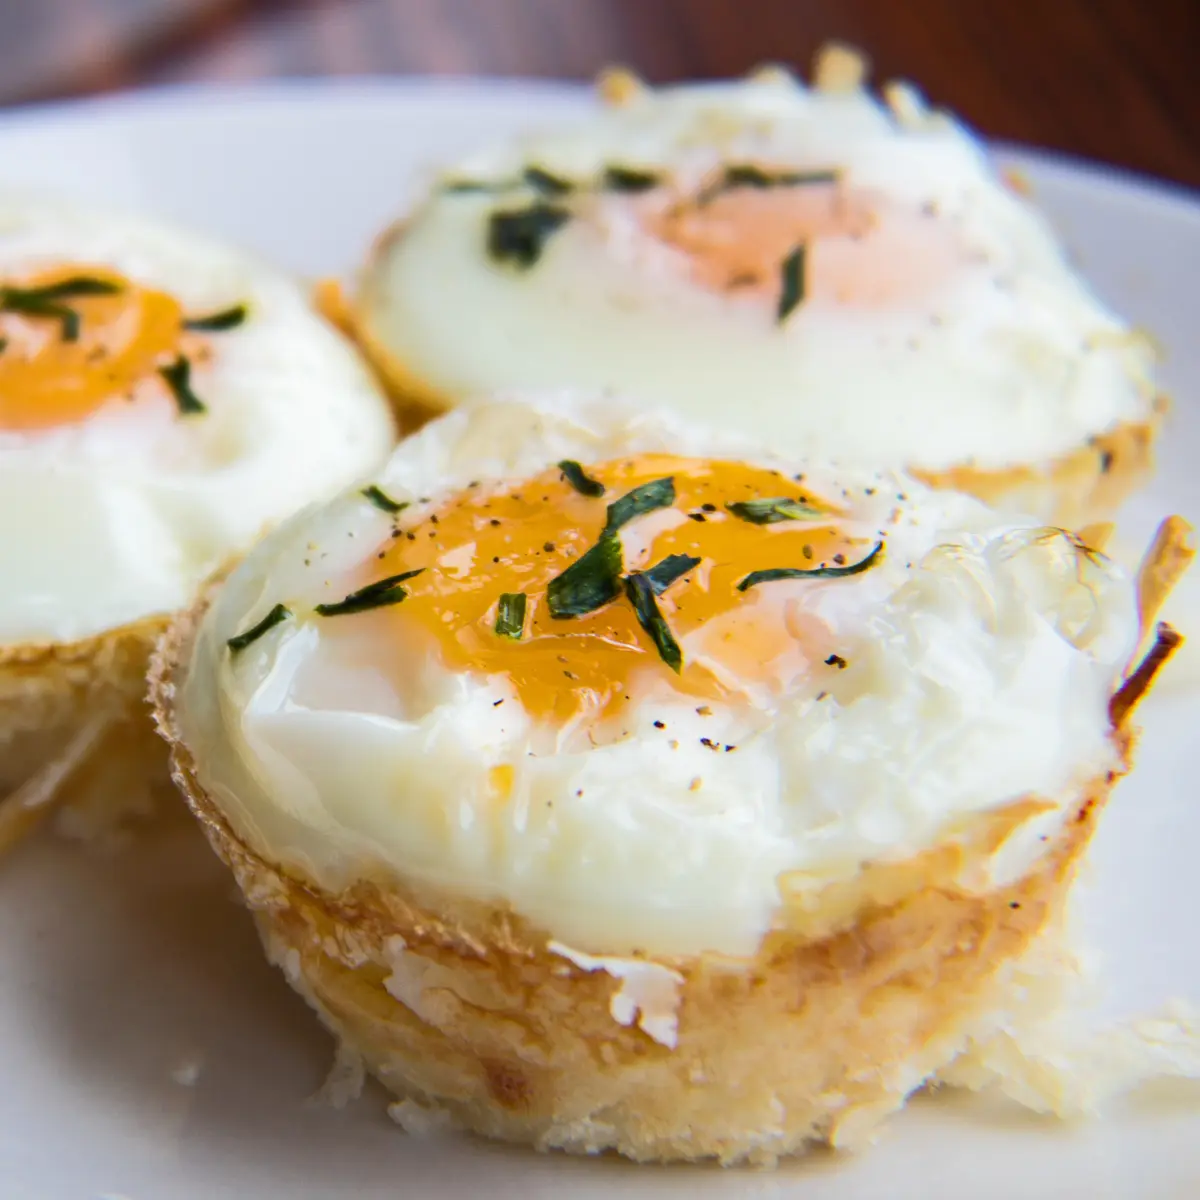 Dessa superlätta att göra bakade hashbruna äggkoppar är läckra on-the-go frukost bakade i muffinsformar!